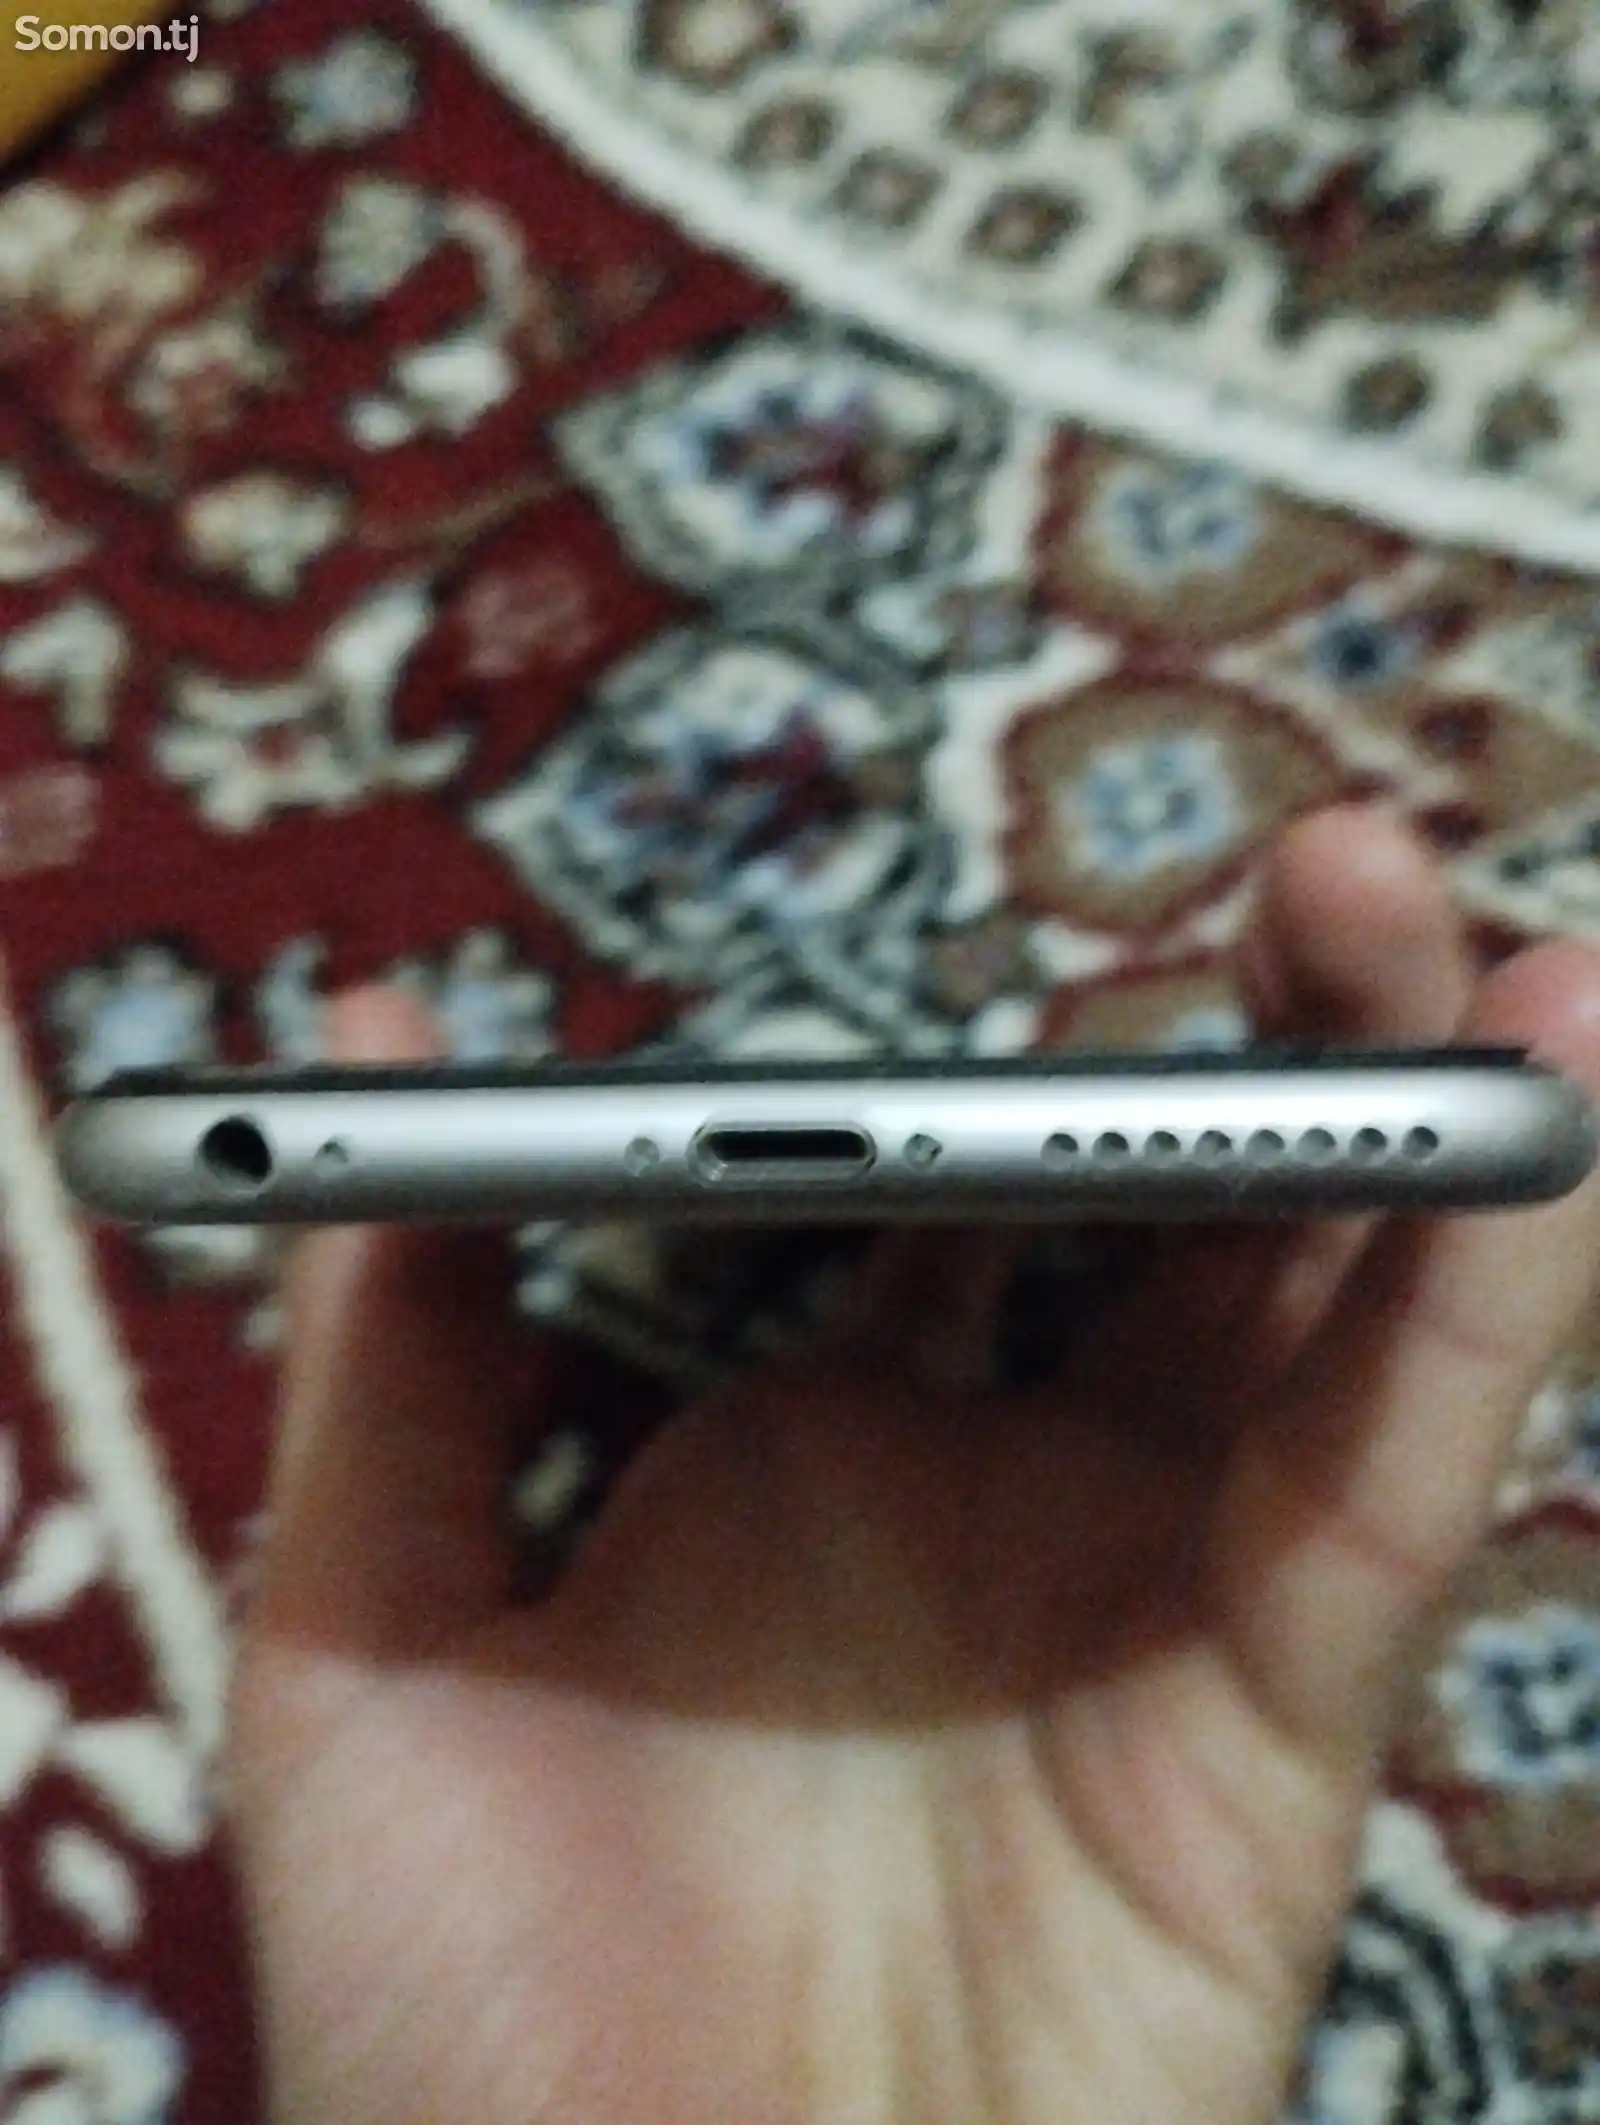 Apple iPhone 6S plus, 64 gb-2